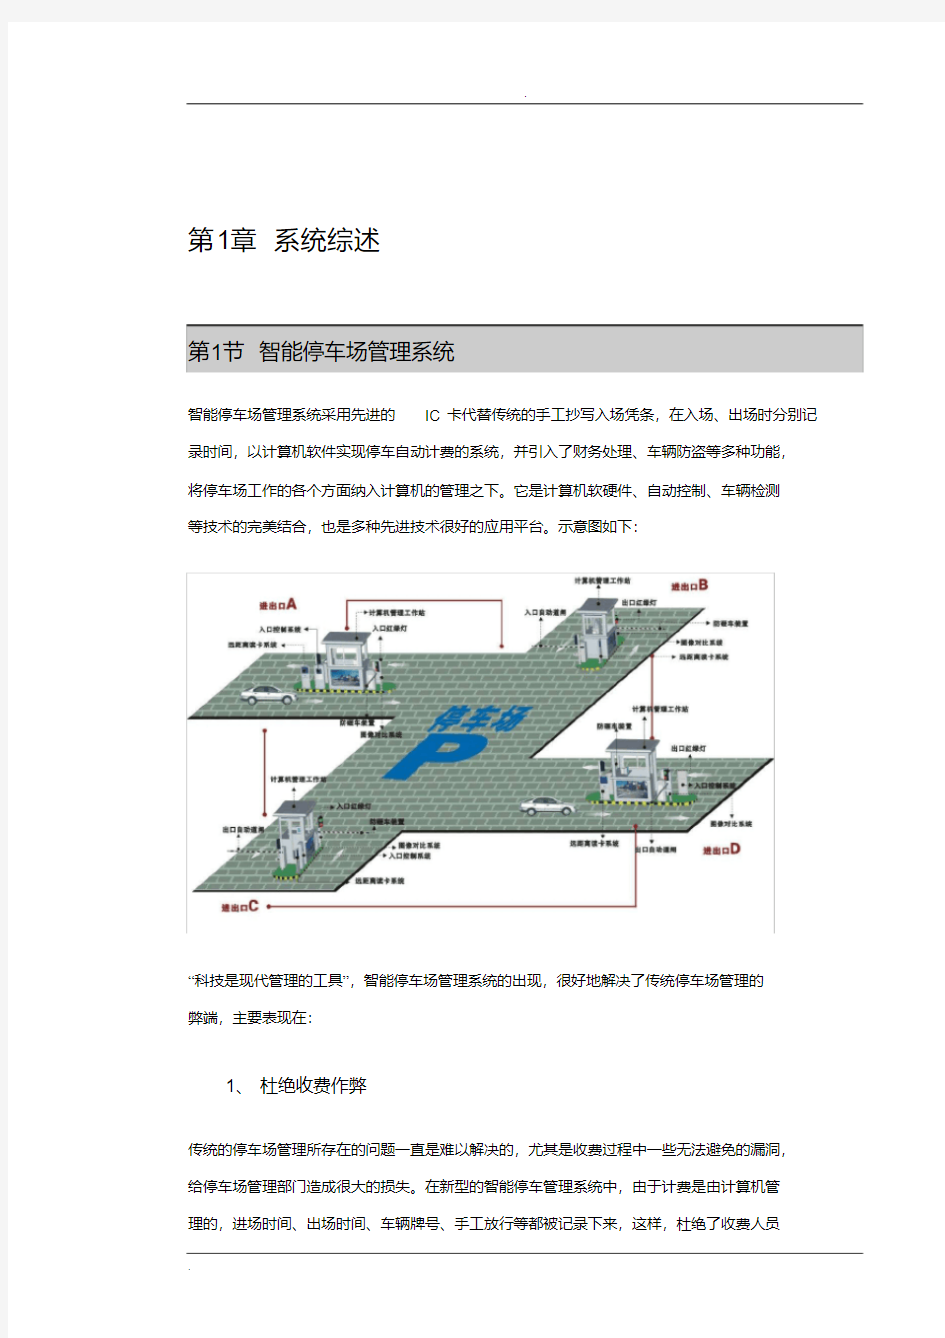 智能停车场系统建设方案(20200530114759)